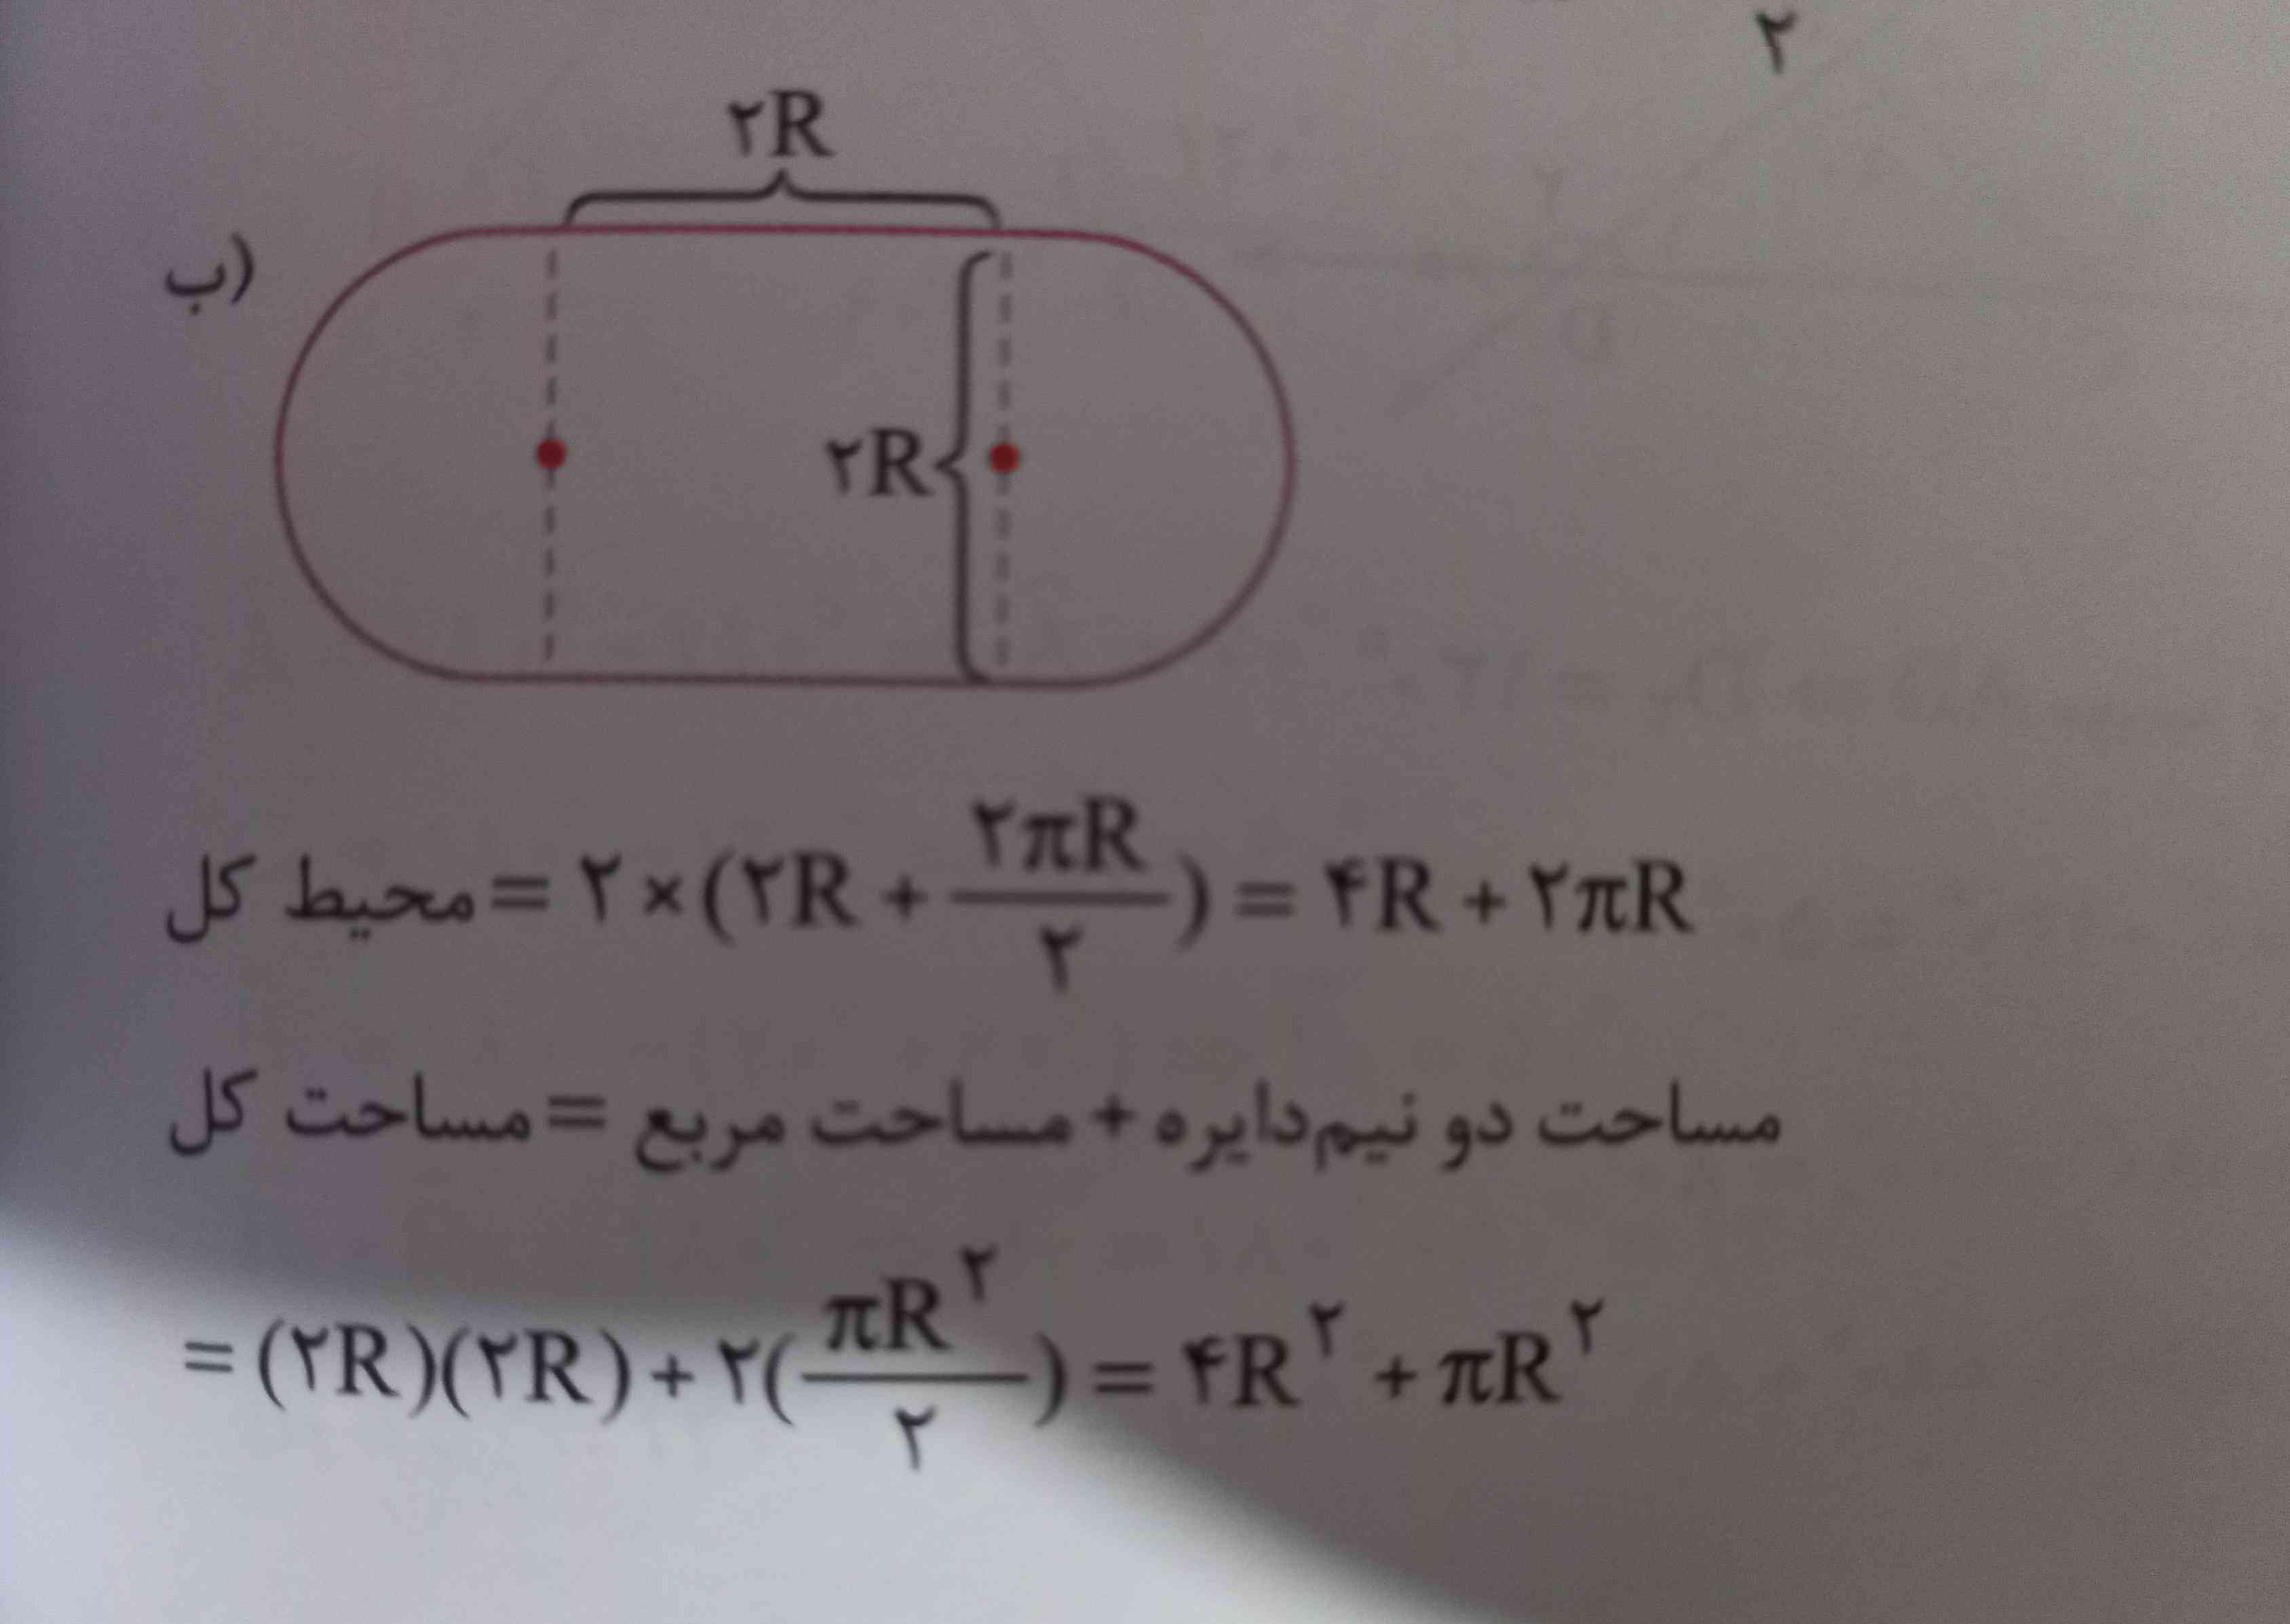 سلام چرا محیطش میشه 4R+2πR
مگه فرمول محیط مربع یک ضلع × 4 نمیشه چرا شده 4R
(فقط واسه محیط مربع منظورم هست ) 